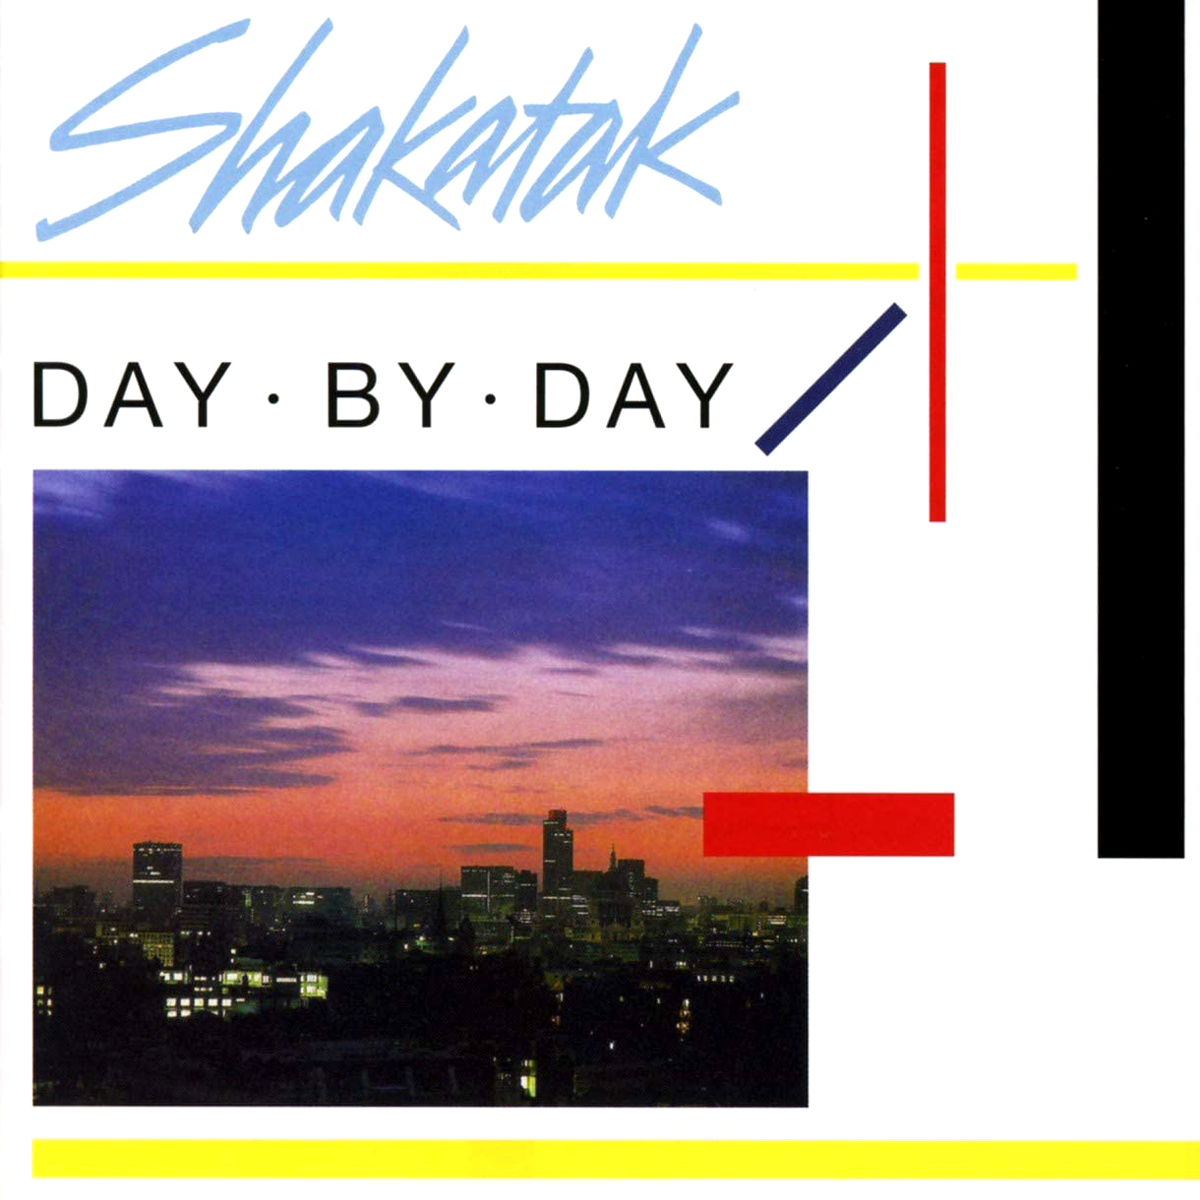 SHAKATAK 'Day･By･Day' aka 'City Rhythm'